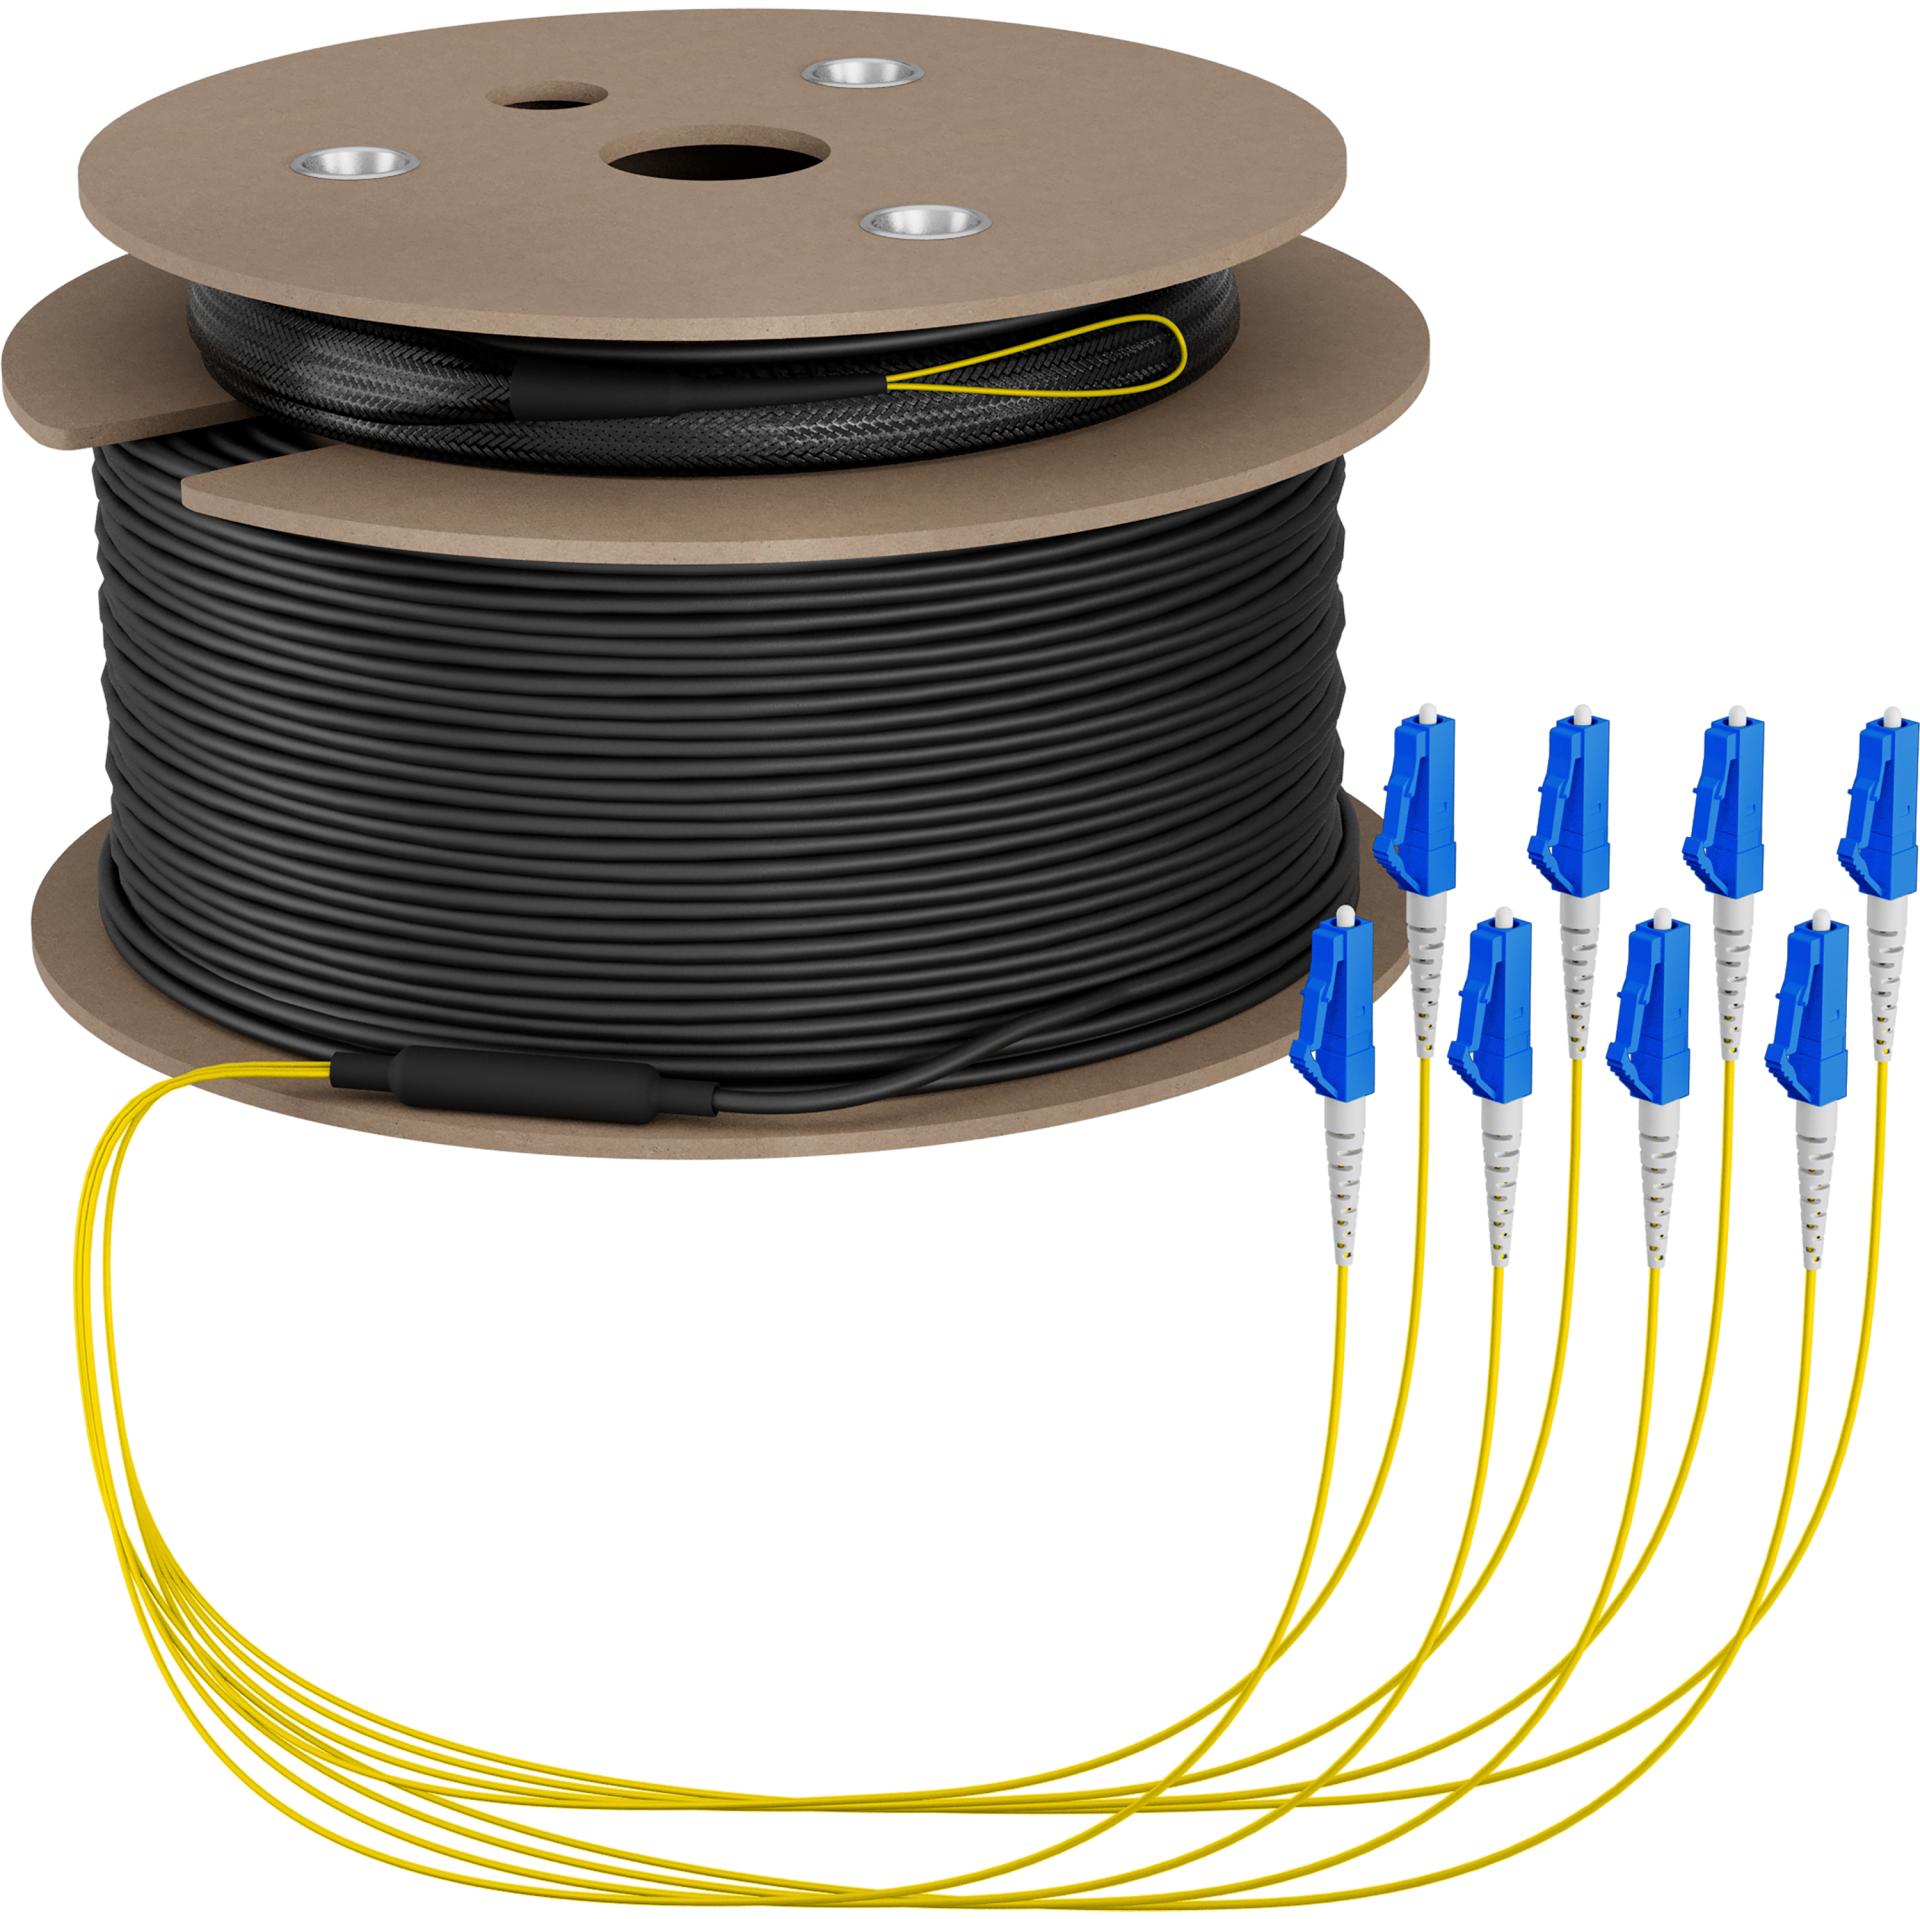 Trunk cable U-DQ(ZN)BH OS2 8E (1x8) LC-LC,160m Dca LSZH